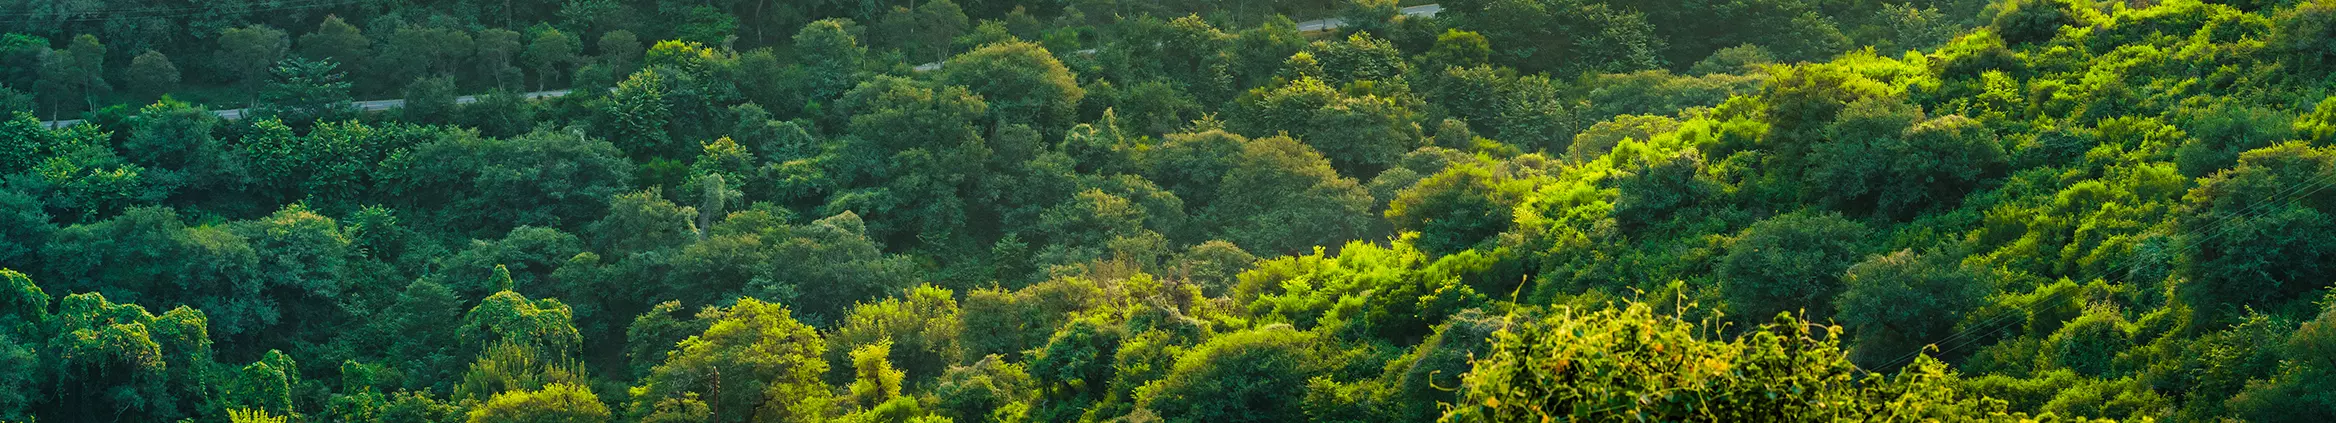 Floresta vista de cima com copa das árvores verde